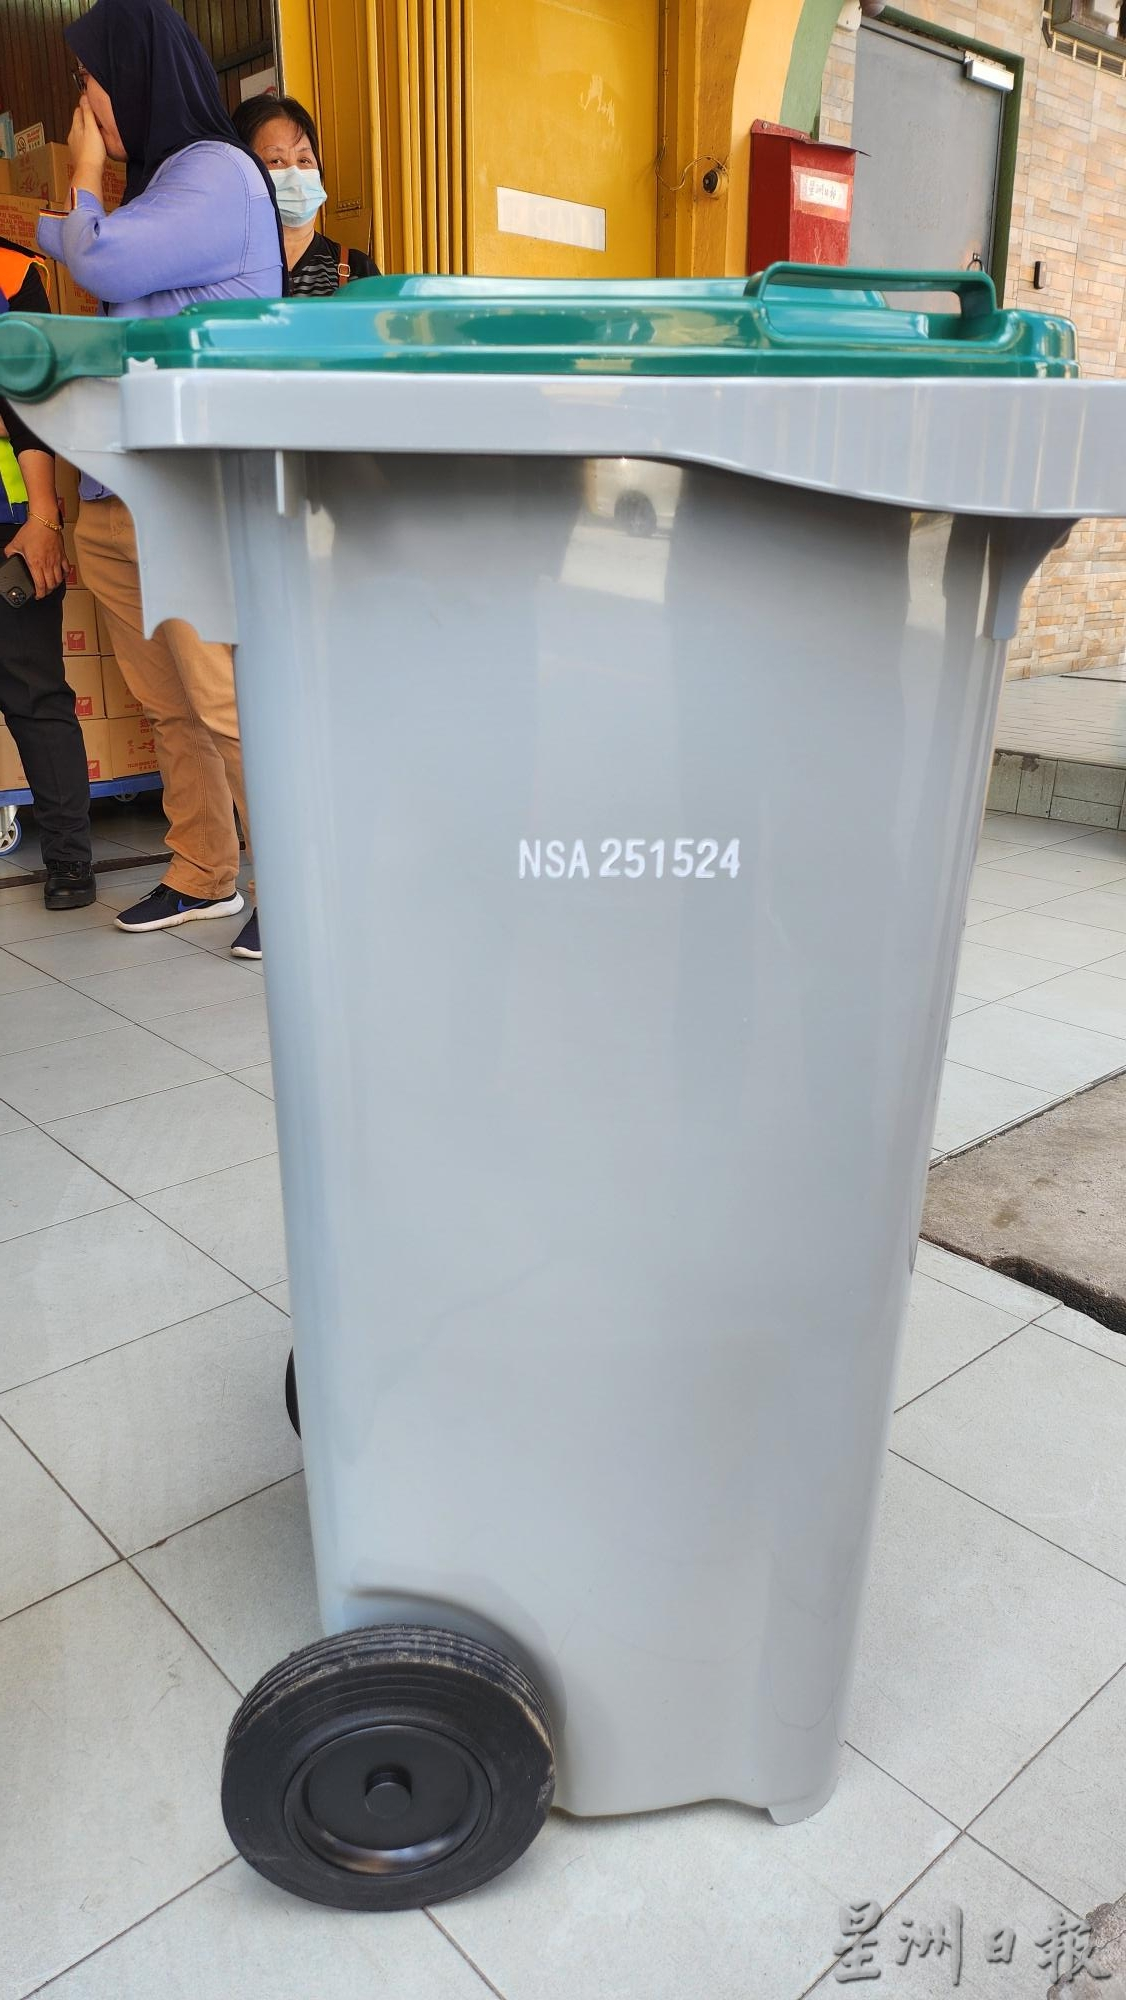 本报报道获关注SWM送商家新垃圾桶- 地方- 花城最热点